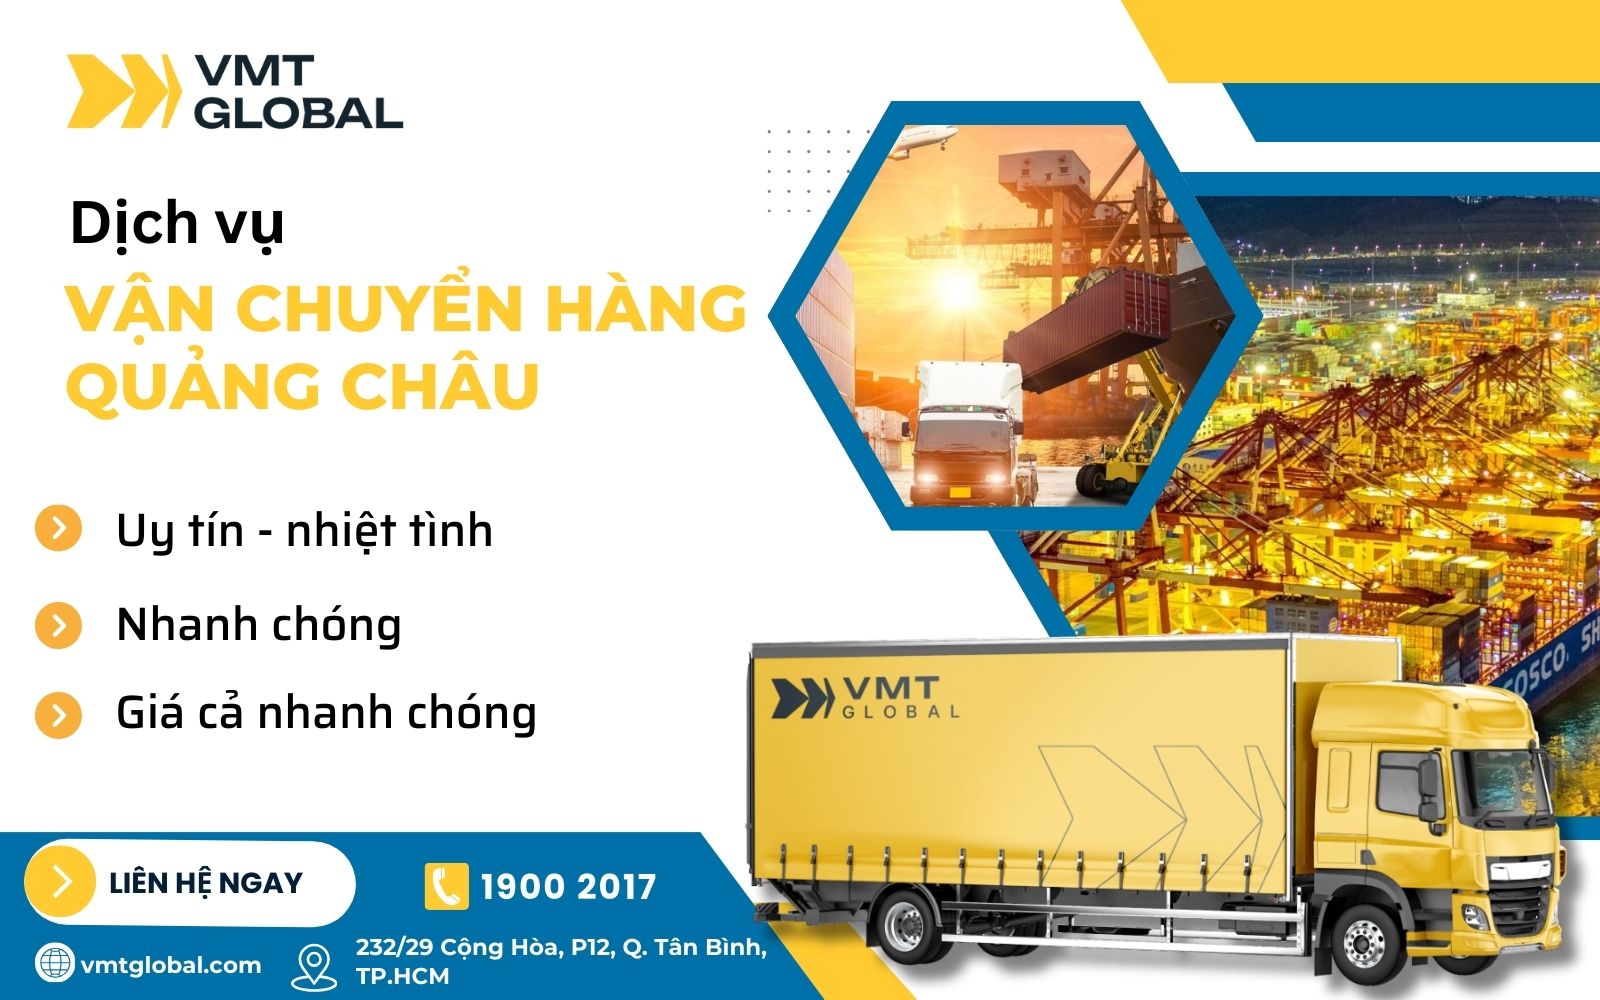 Dịch vụ vận chuyển hàng hóa Quảng Châu tại VMT Global